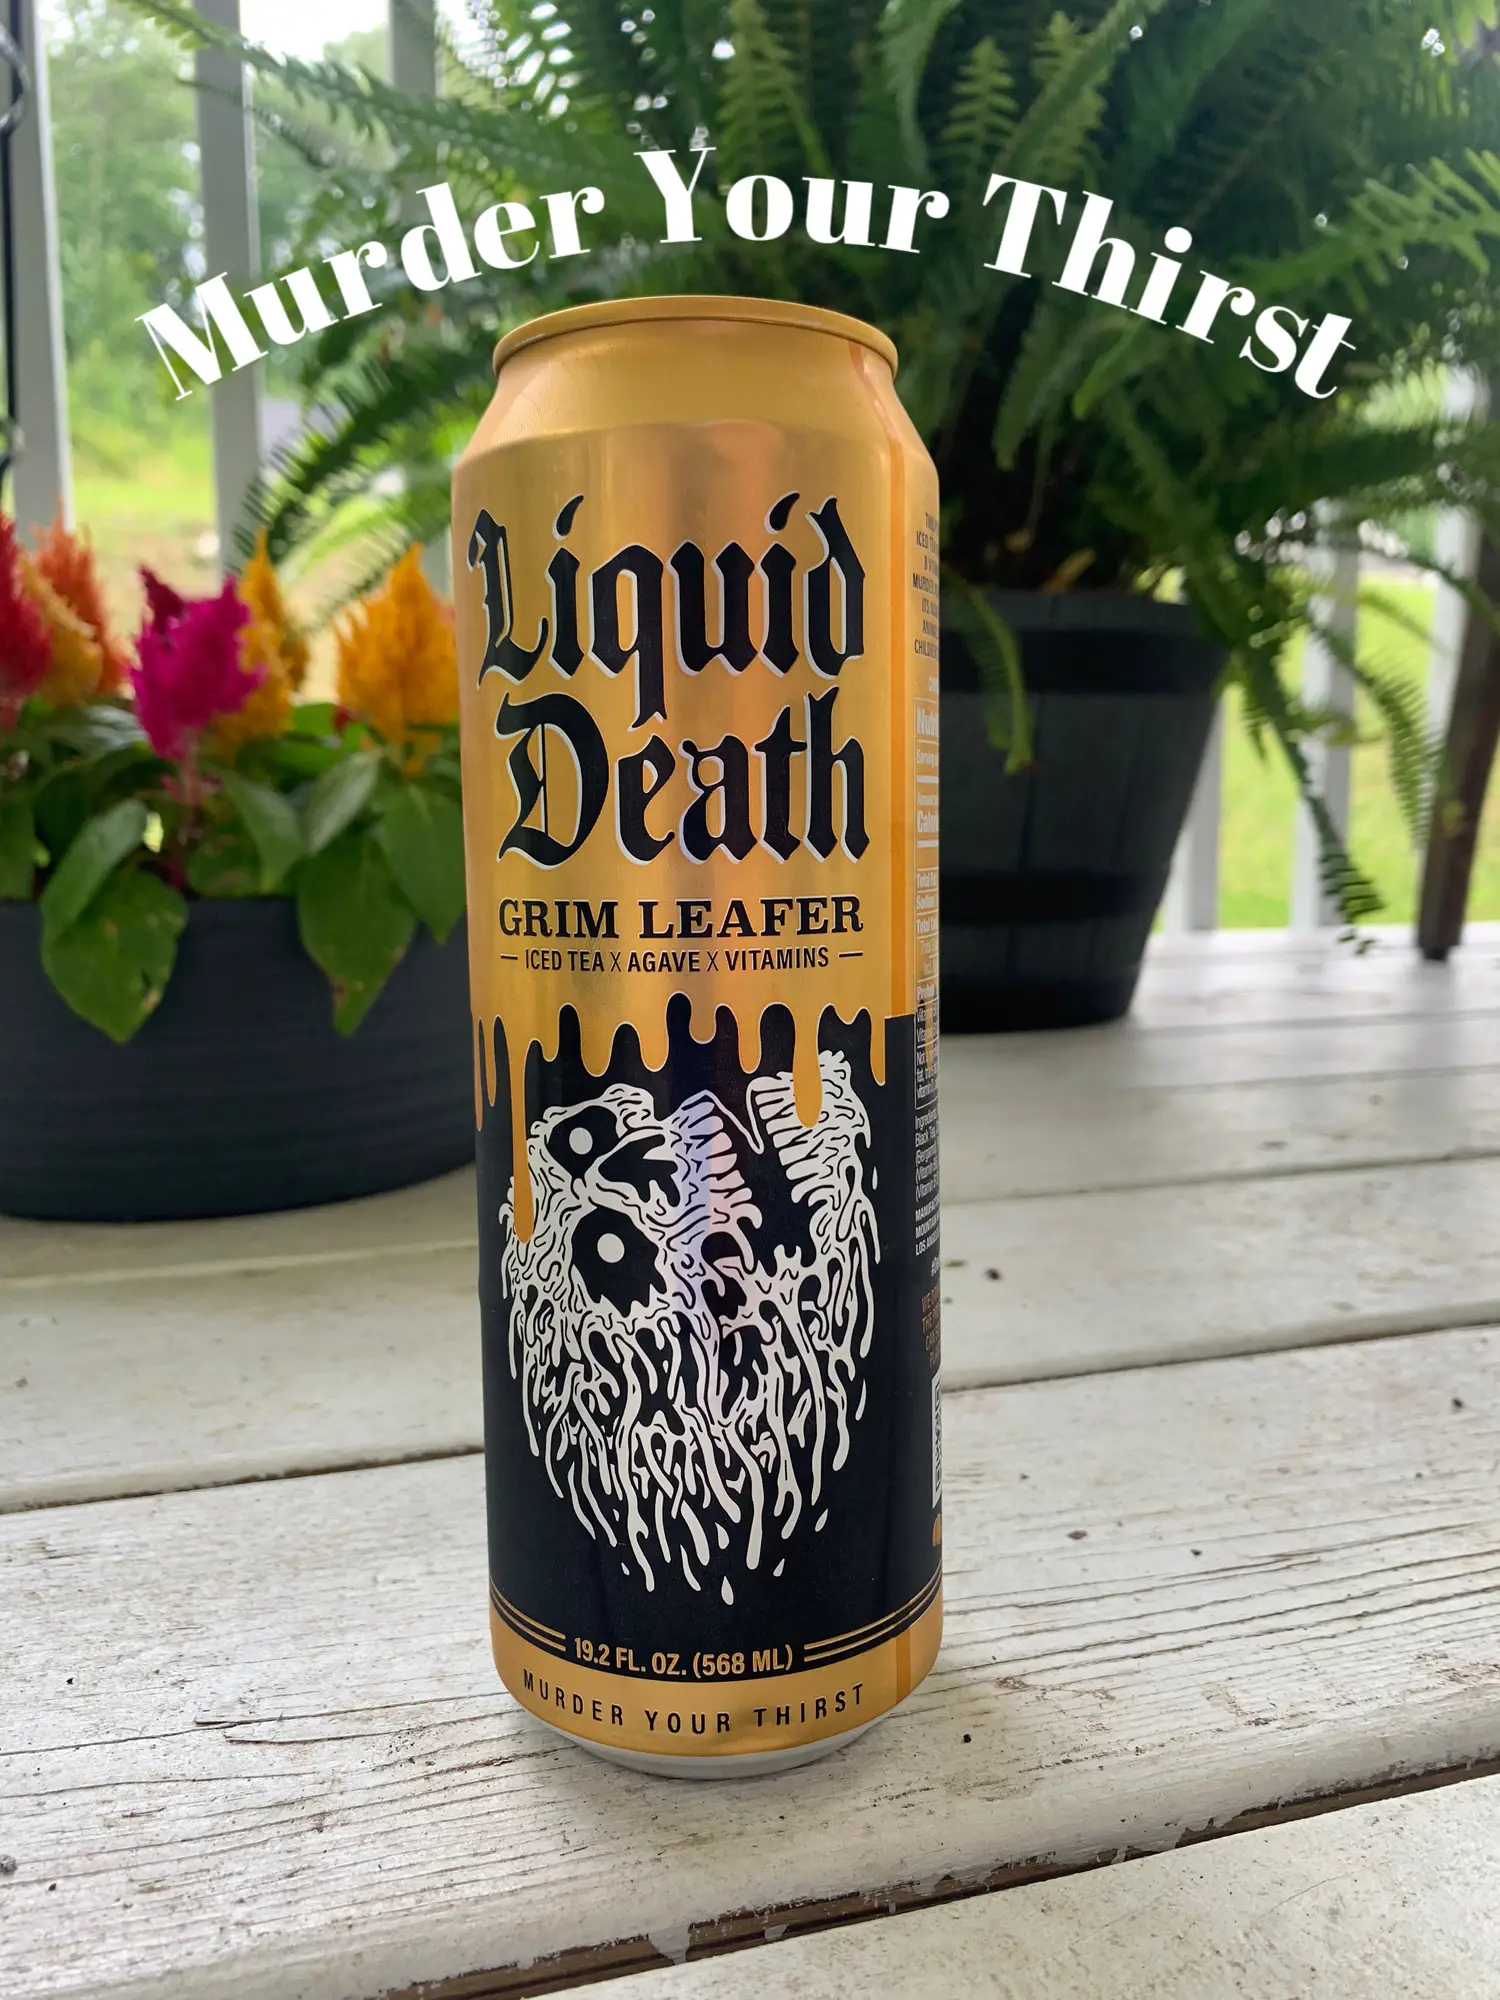  Liquid Death Still & Sparkling Mixed Pack, 19.2 oz